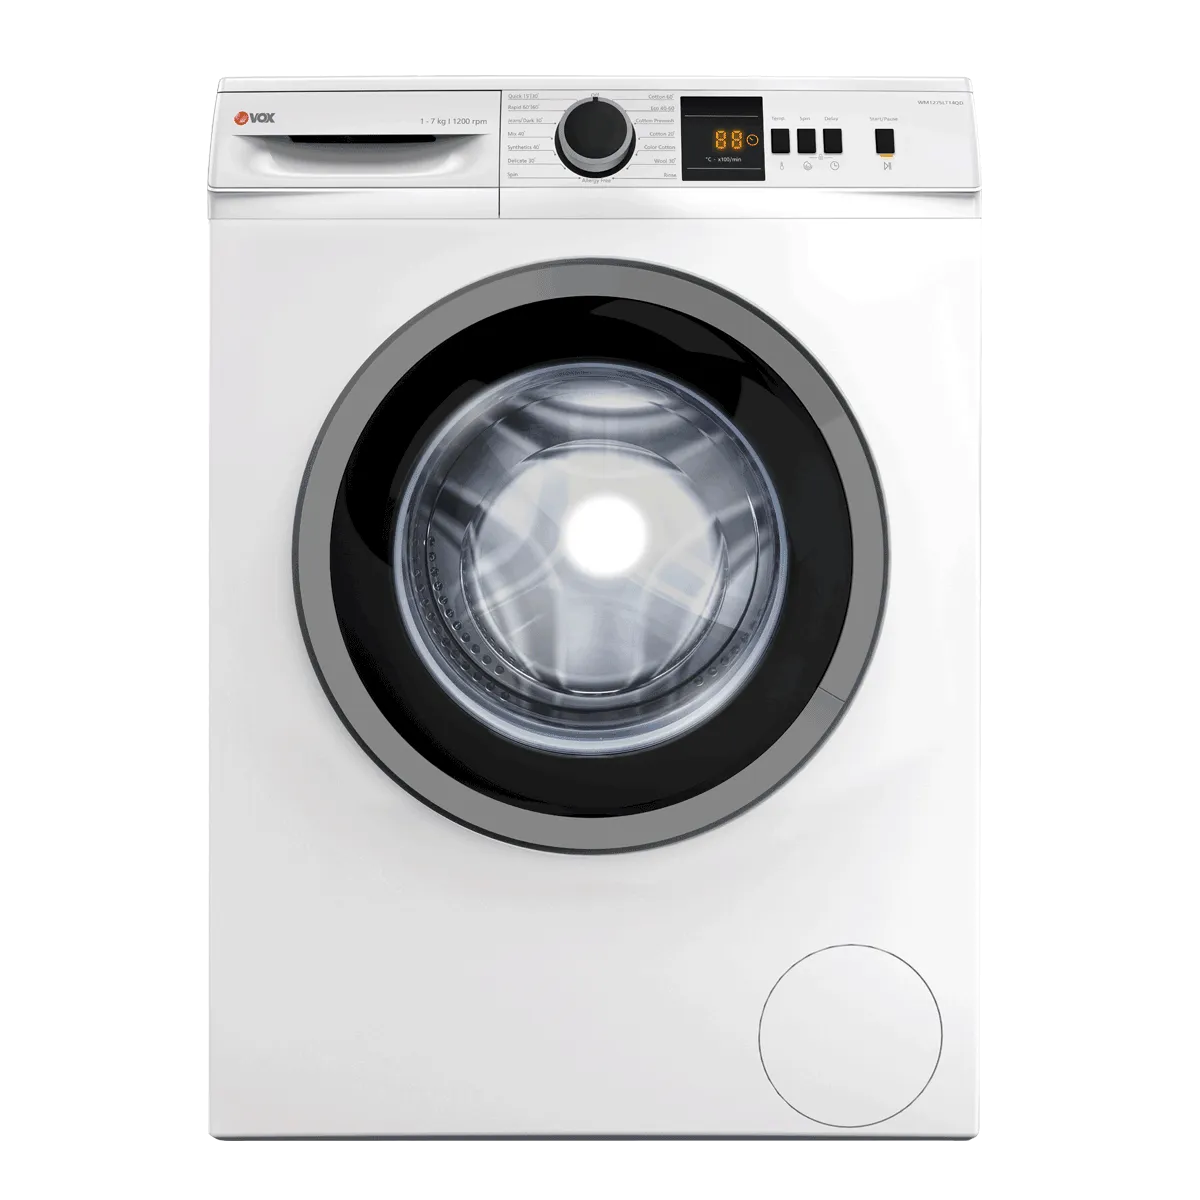 Washing machine WM1275-LT14QD 